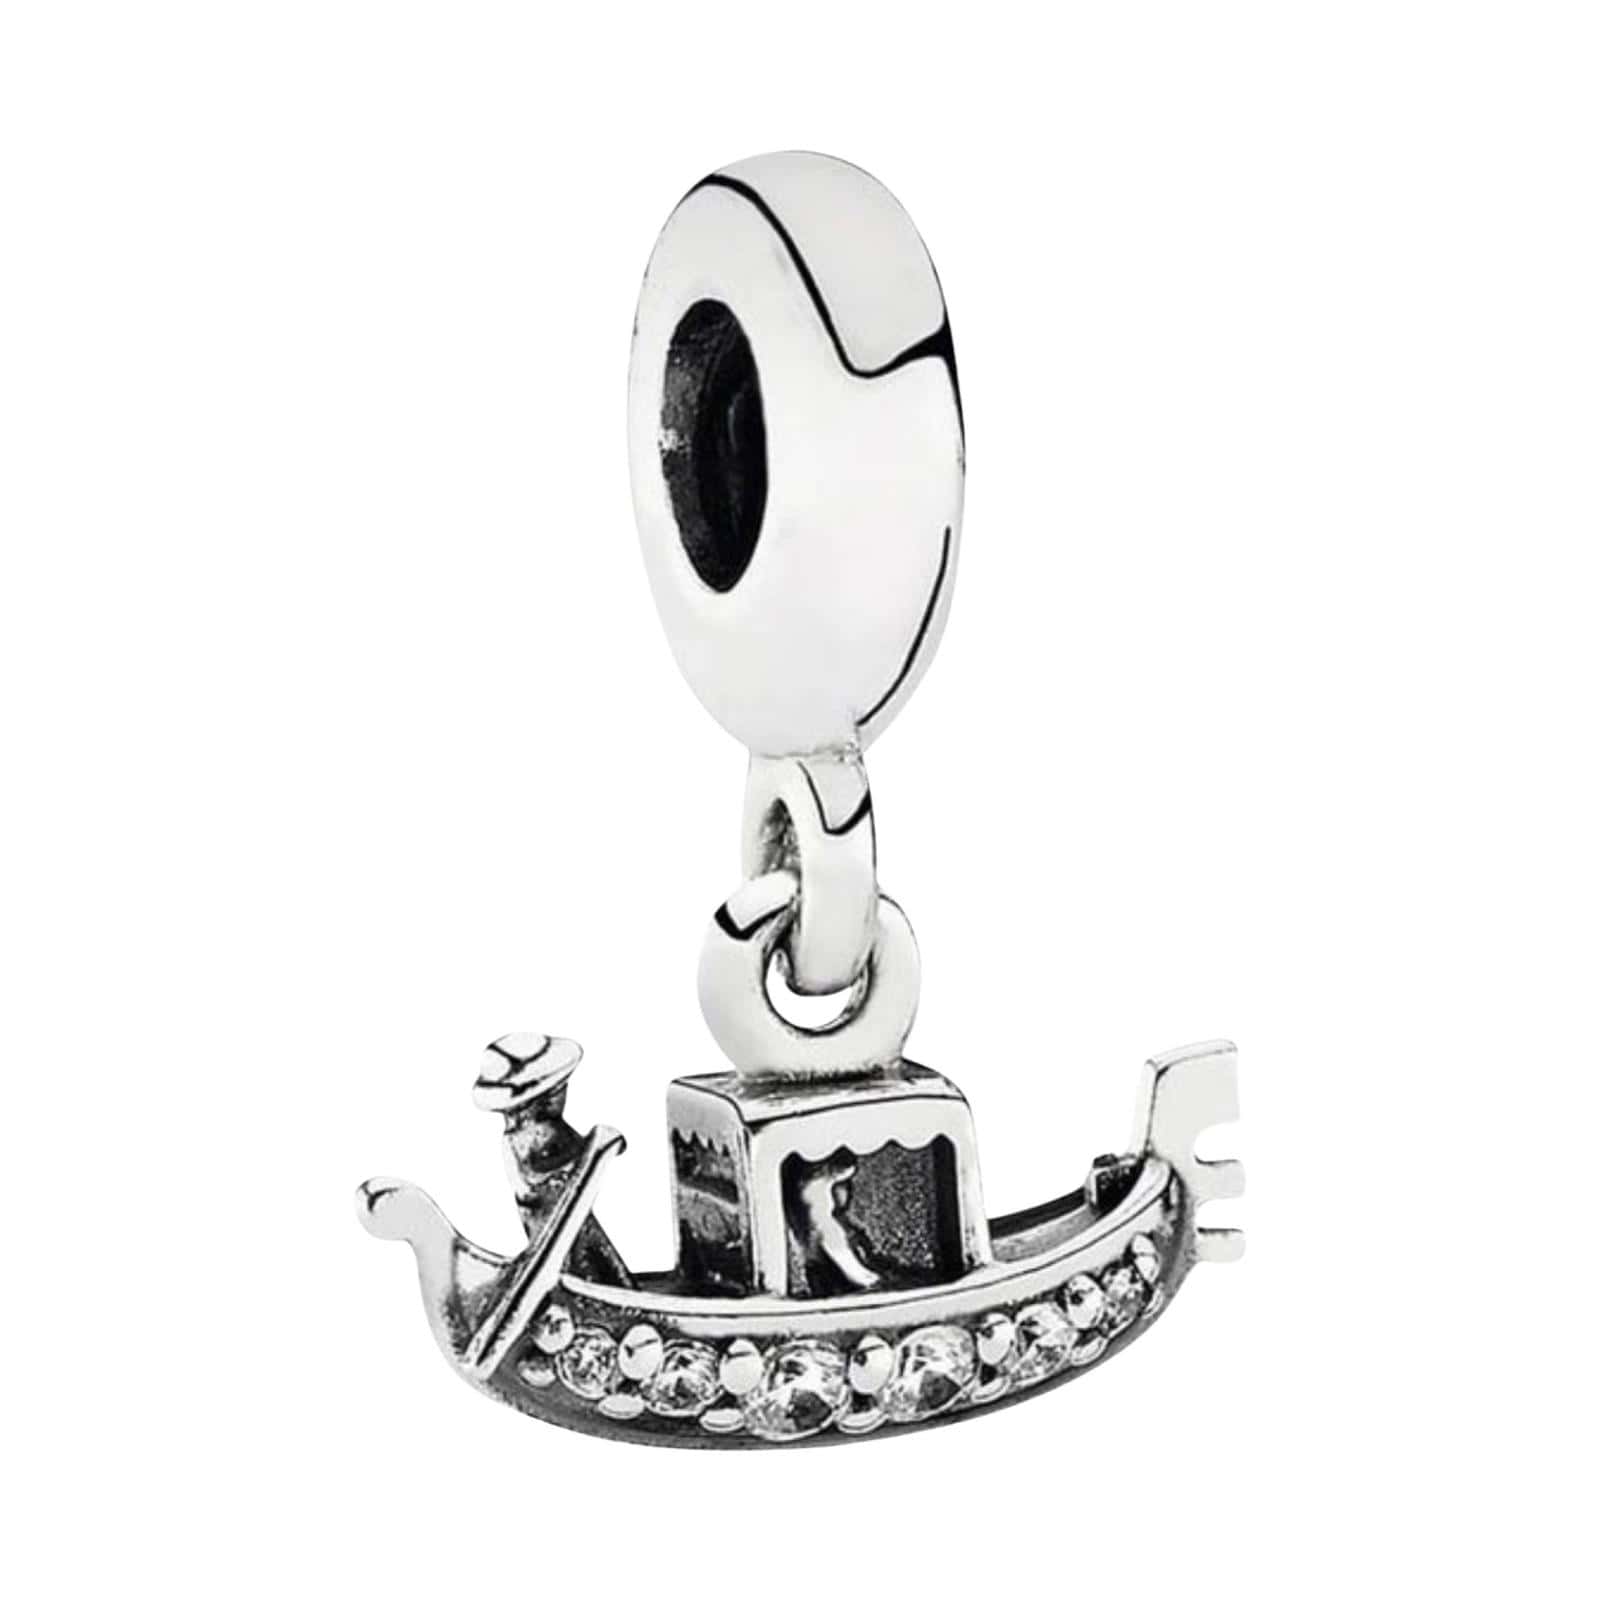 Product Afbeelding Vooraanzicht van onze prachtige gondel uit venetie. Deze charm is gemaakt van 925 sterling zilver en is deels ingelegd met zirkonia steentjes.